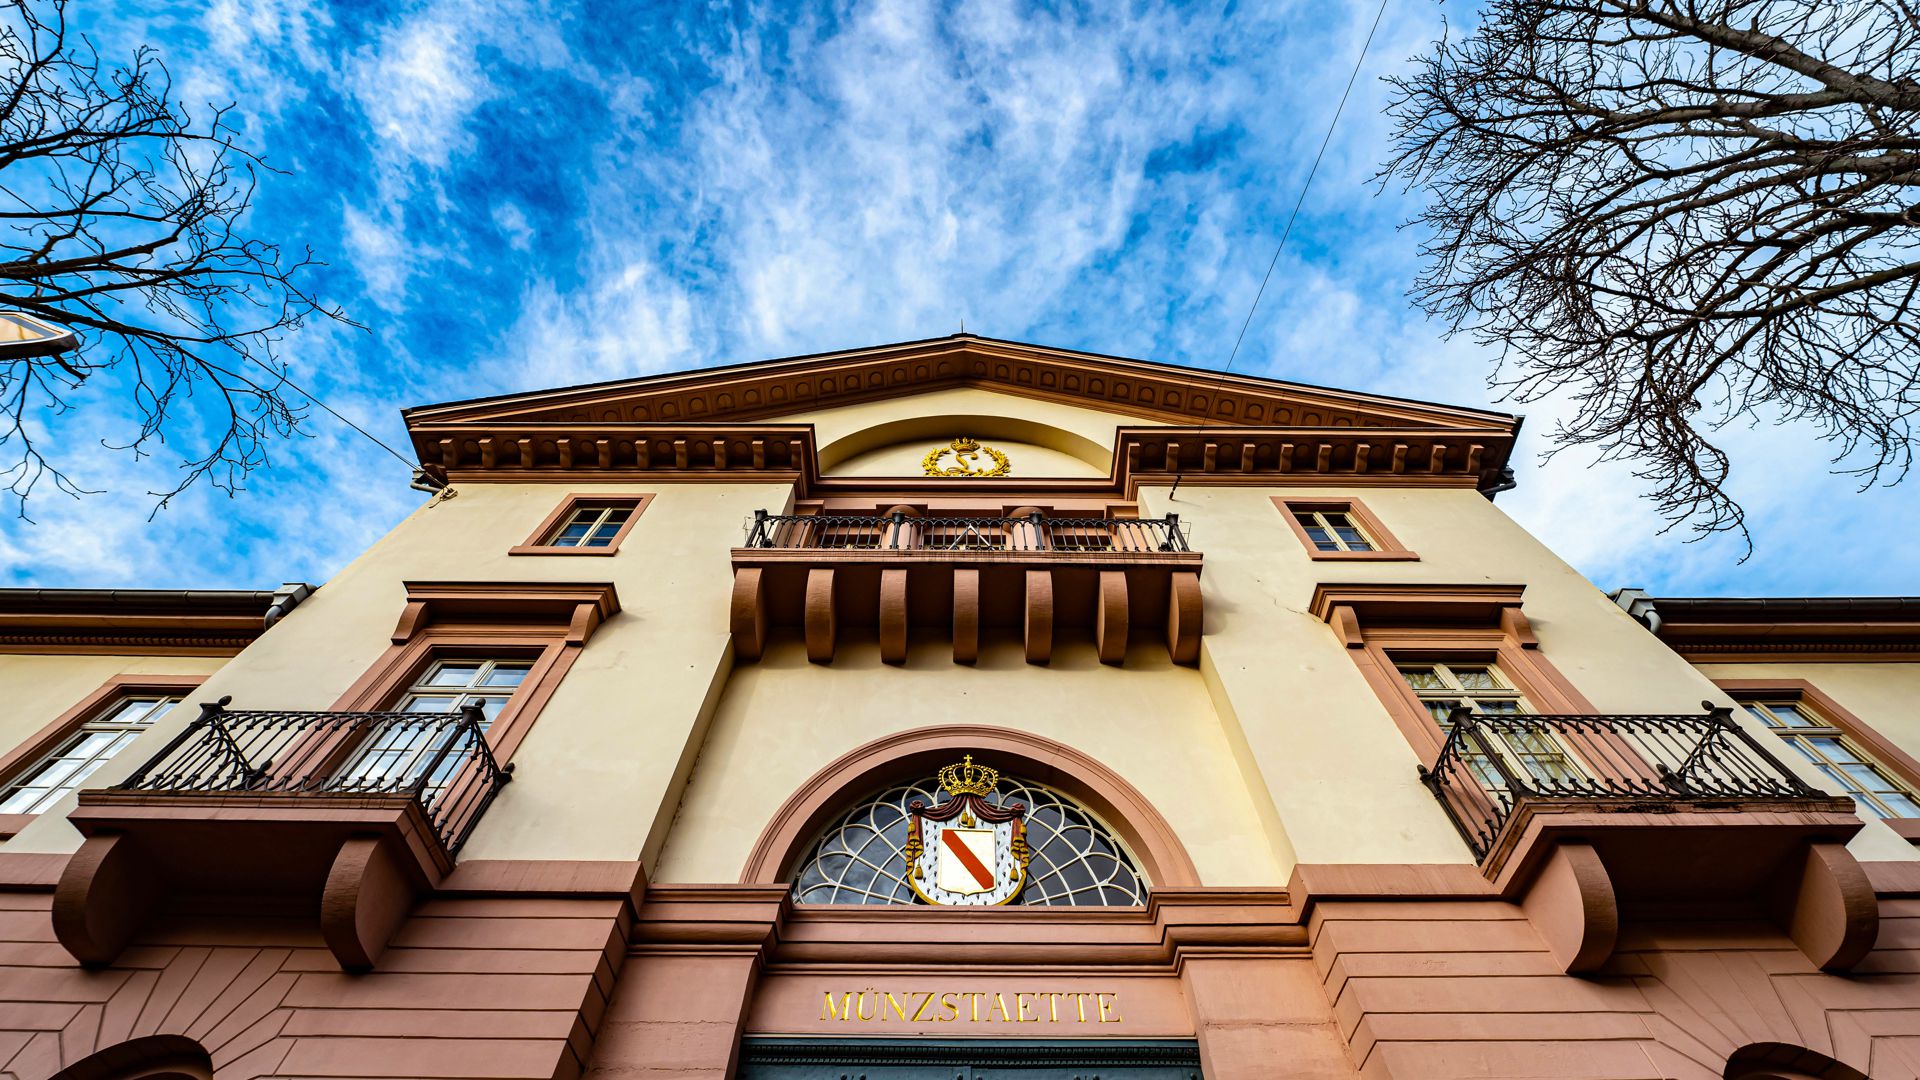 Die Münzstätte Karlsruhe ist seit 1827 in einem wunderschönen klassizistischen Gebäude von Friedrich Weinbrenner untergebracht. Sie wurde damals errichtet, um die Münzen des Großherzogtums Baden zu prägen. 